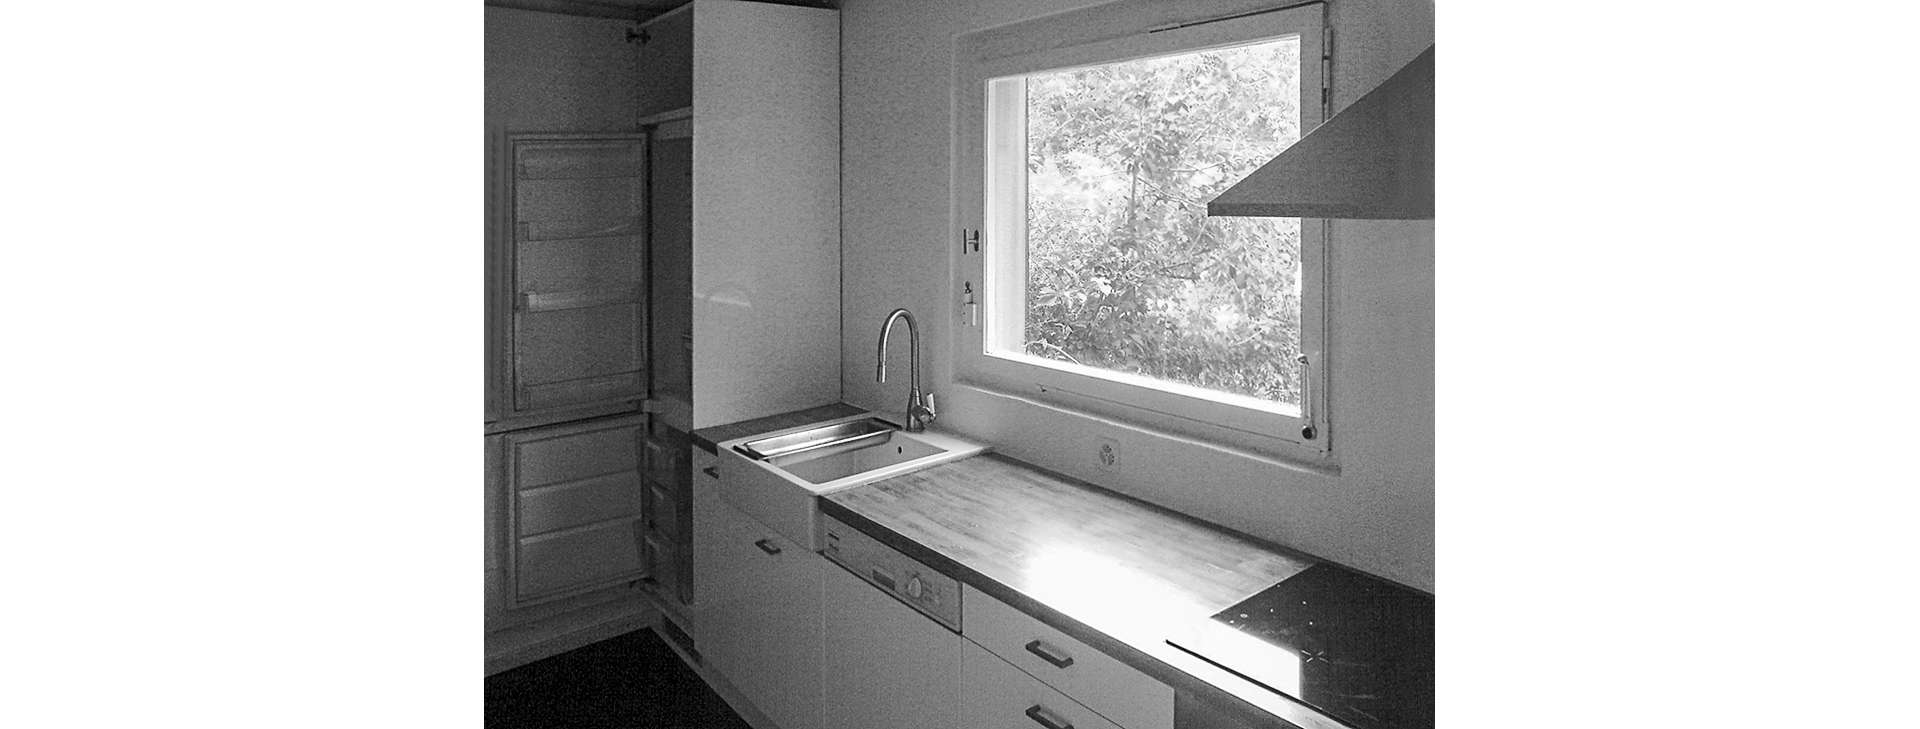 Das alte Küchenfenster hatte schöne Holzlaibungsdetails, die vom Schreiner sorgfältig aufgefrischt und wiederverwendet wurden.